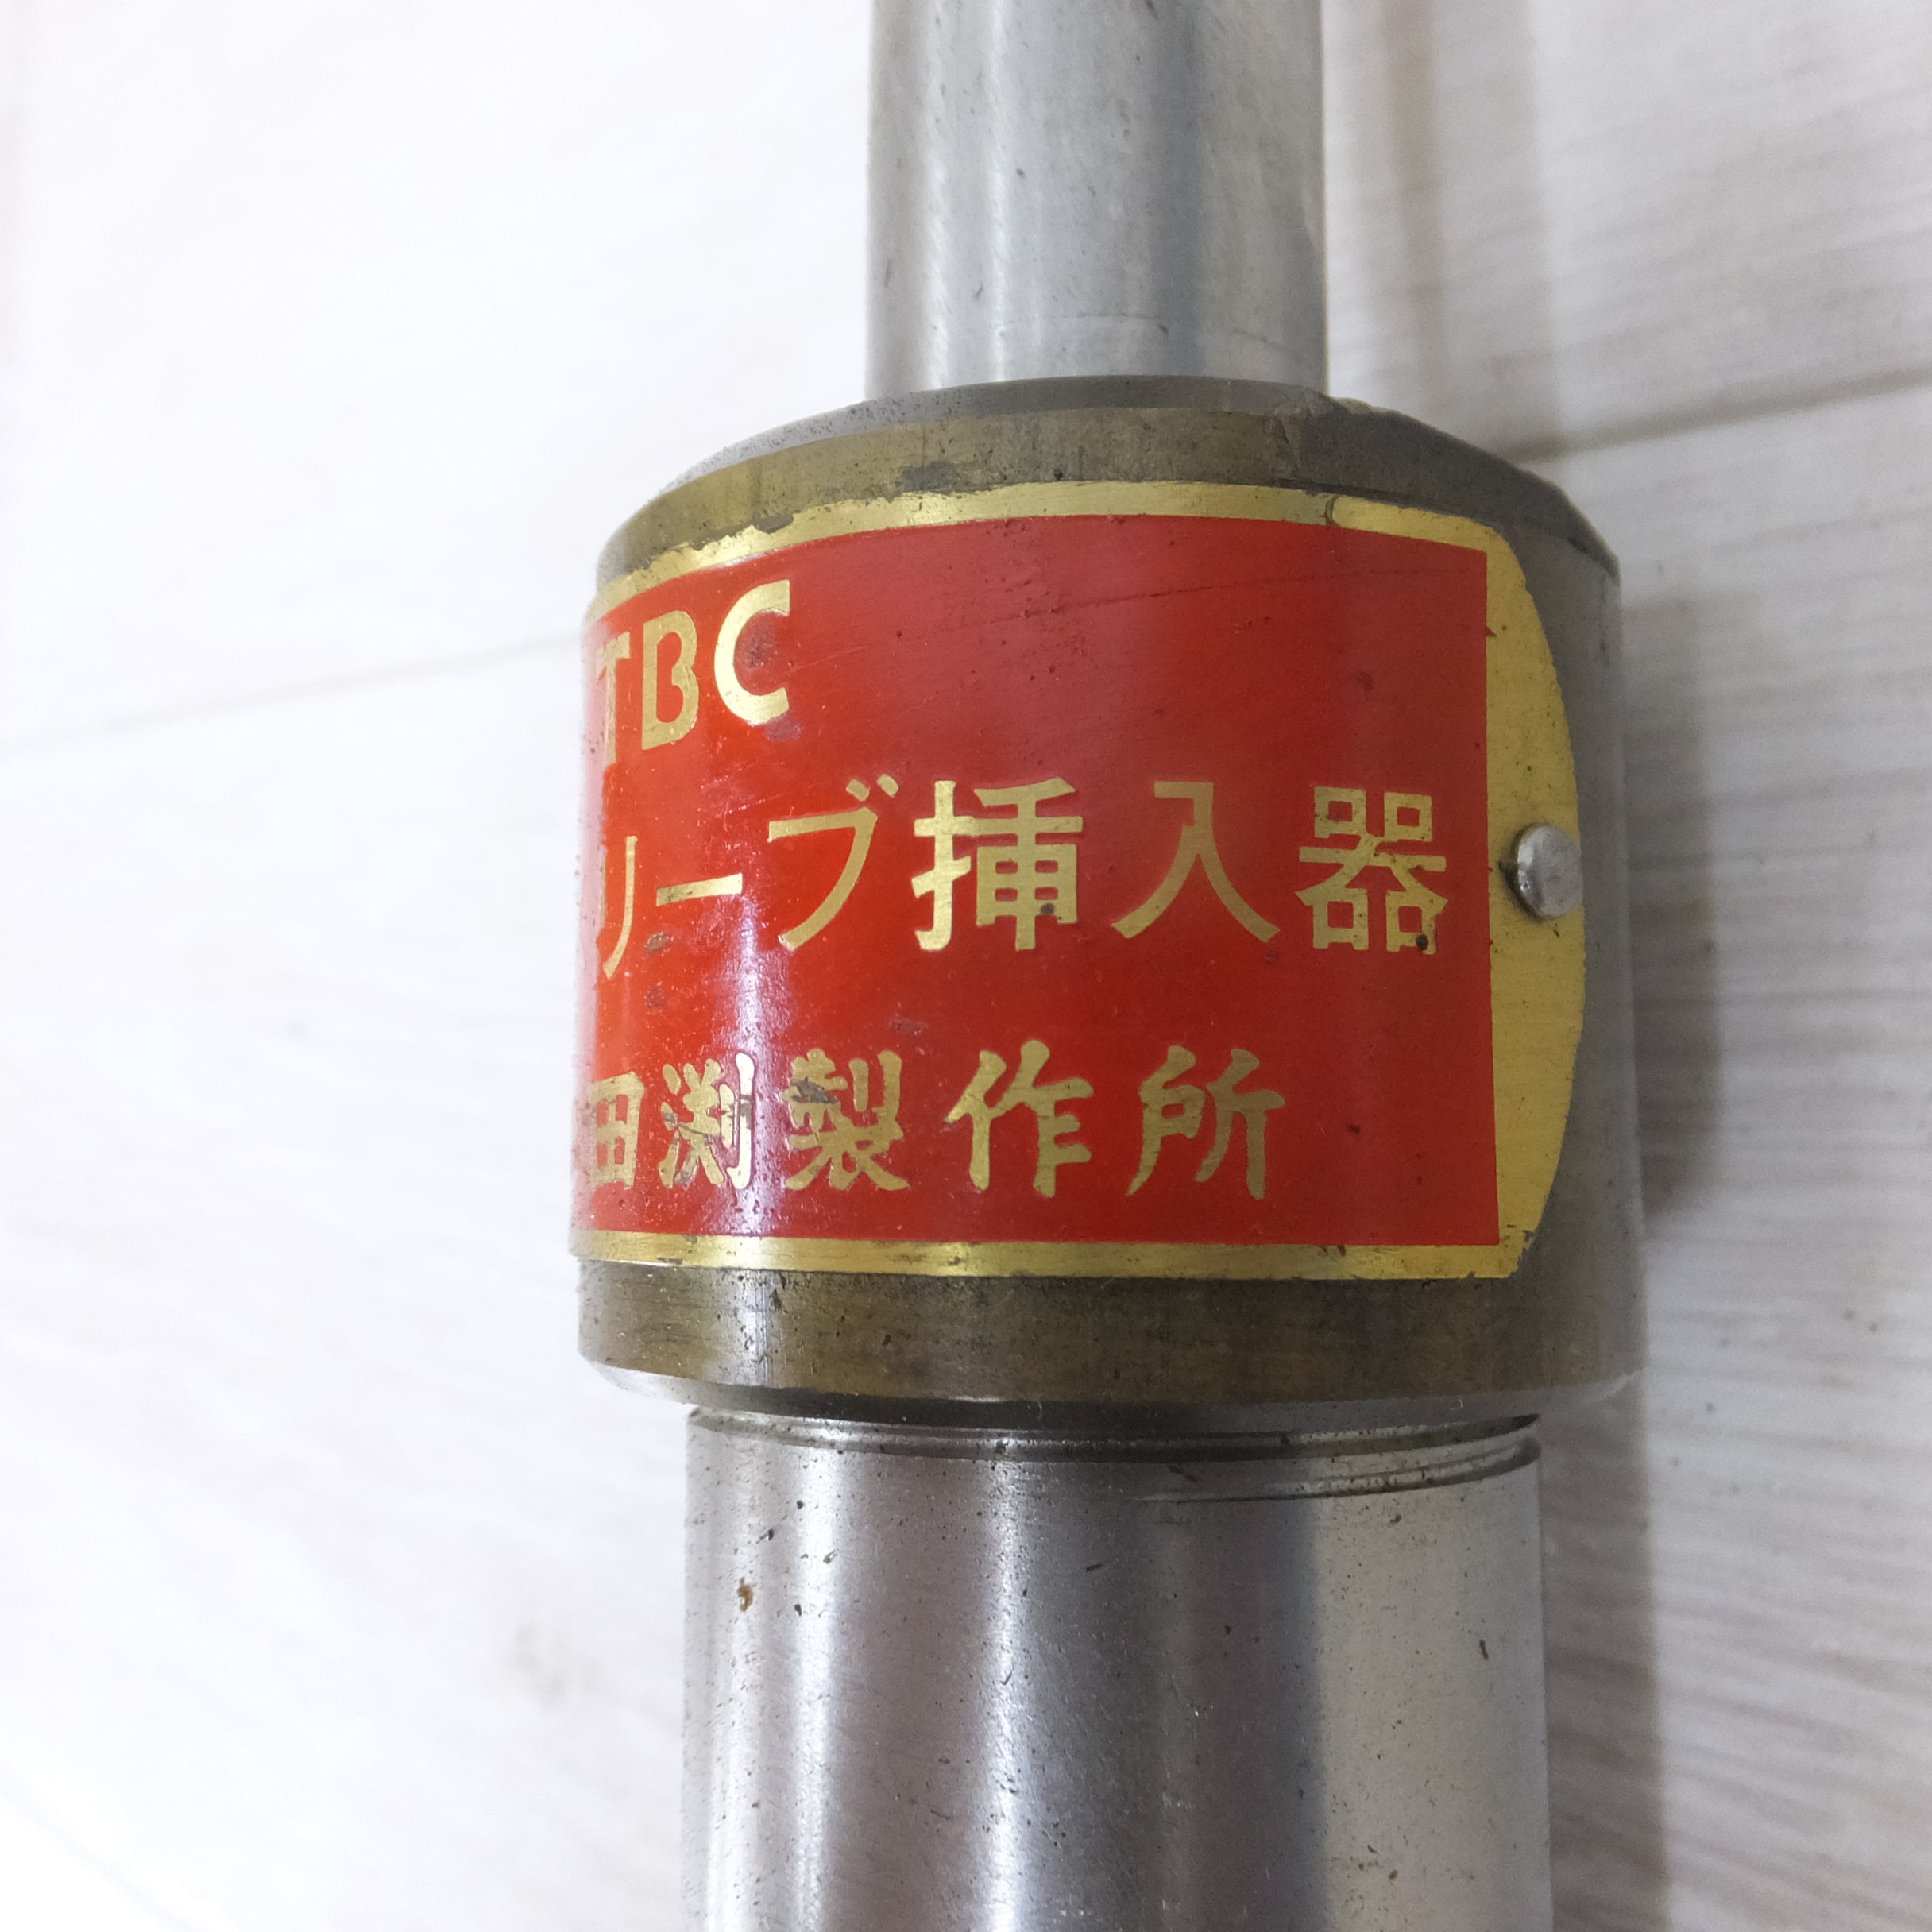 [送料無料] ◆TBC タブチ 田渕製作所 メタルスリーブ 挿入器 水道管工事 配管 工具◆